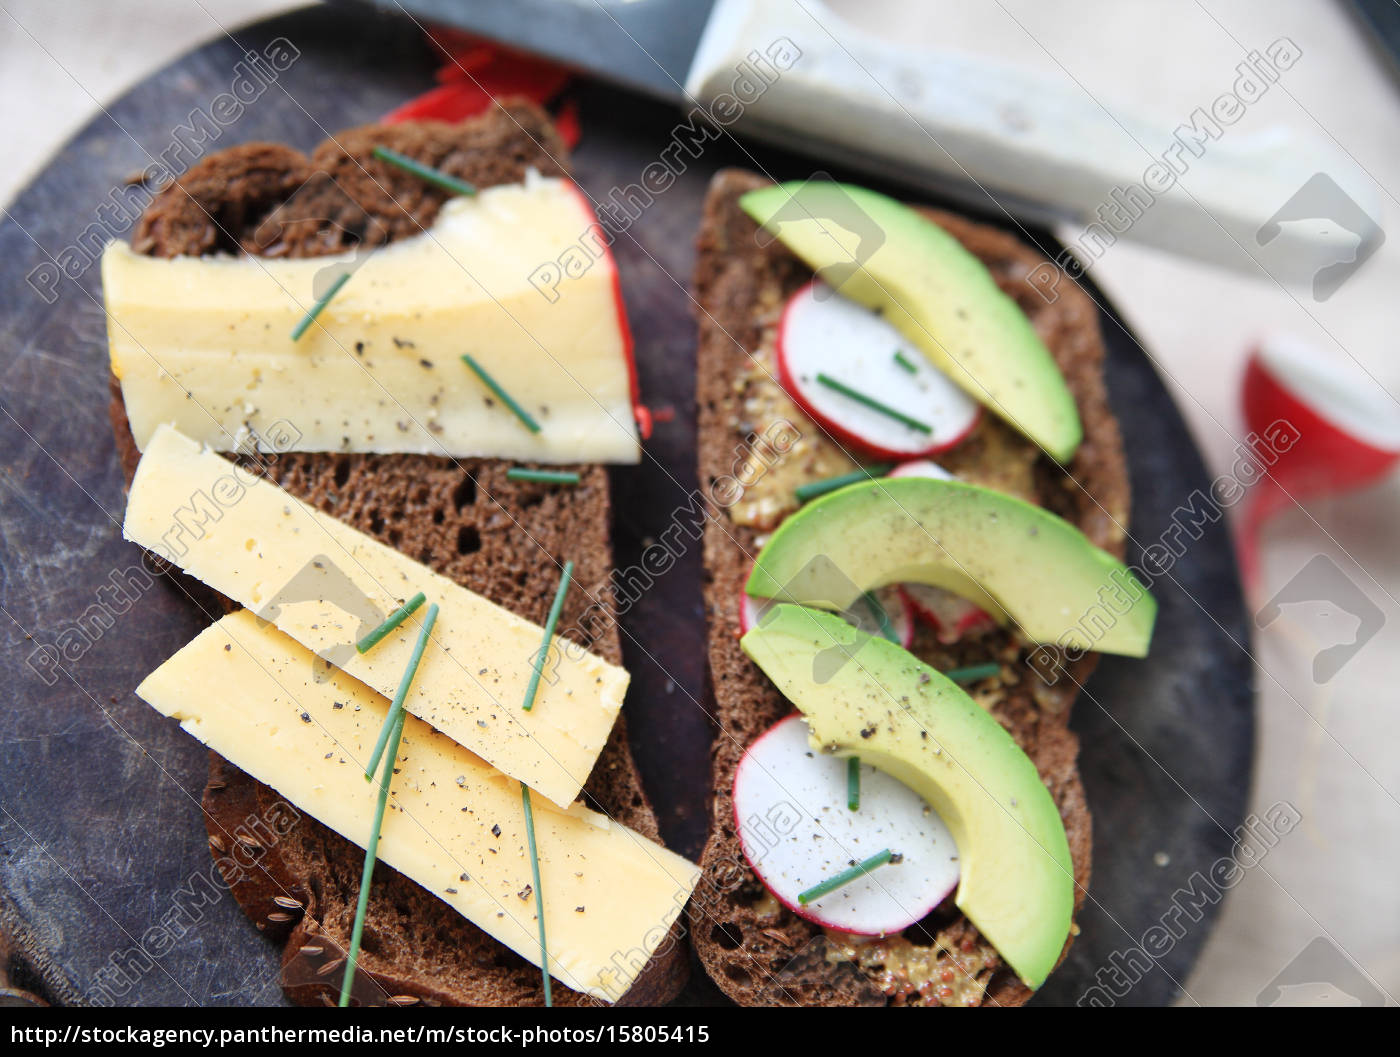 käsesandwich mit avocado und radieschen - Lizenzfreies Bild - #15805415 ...